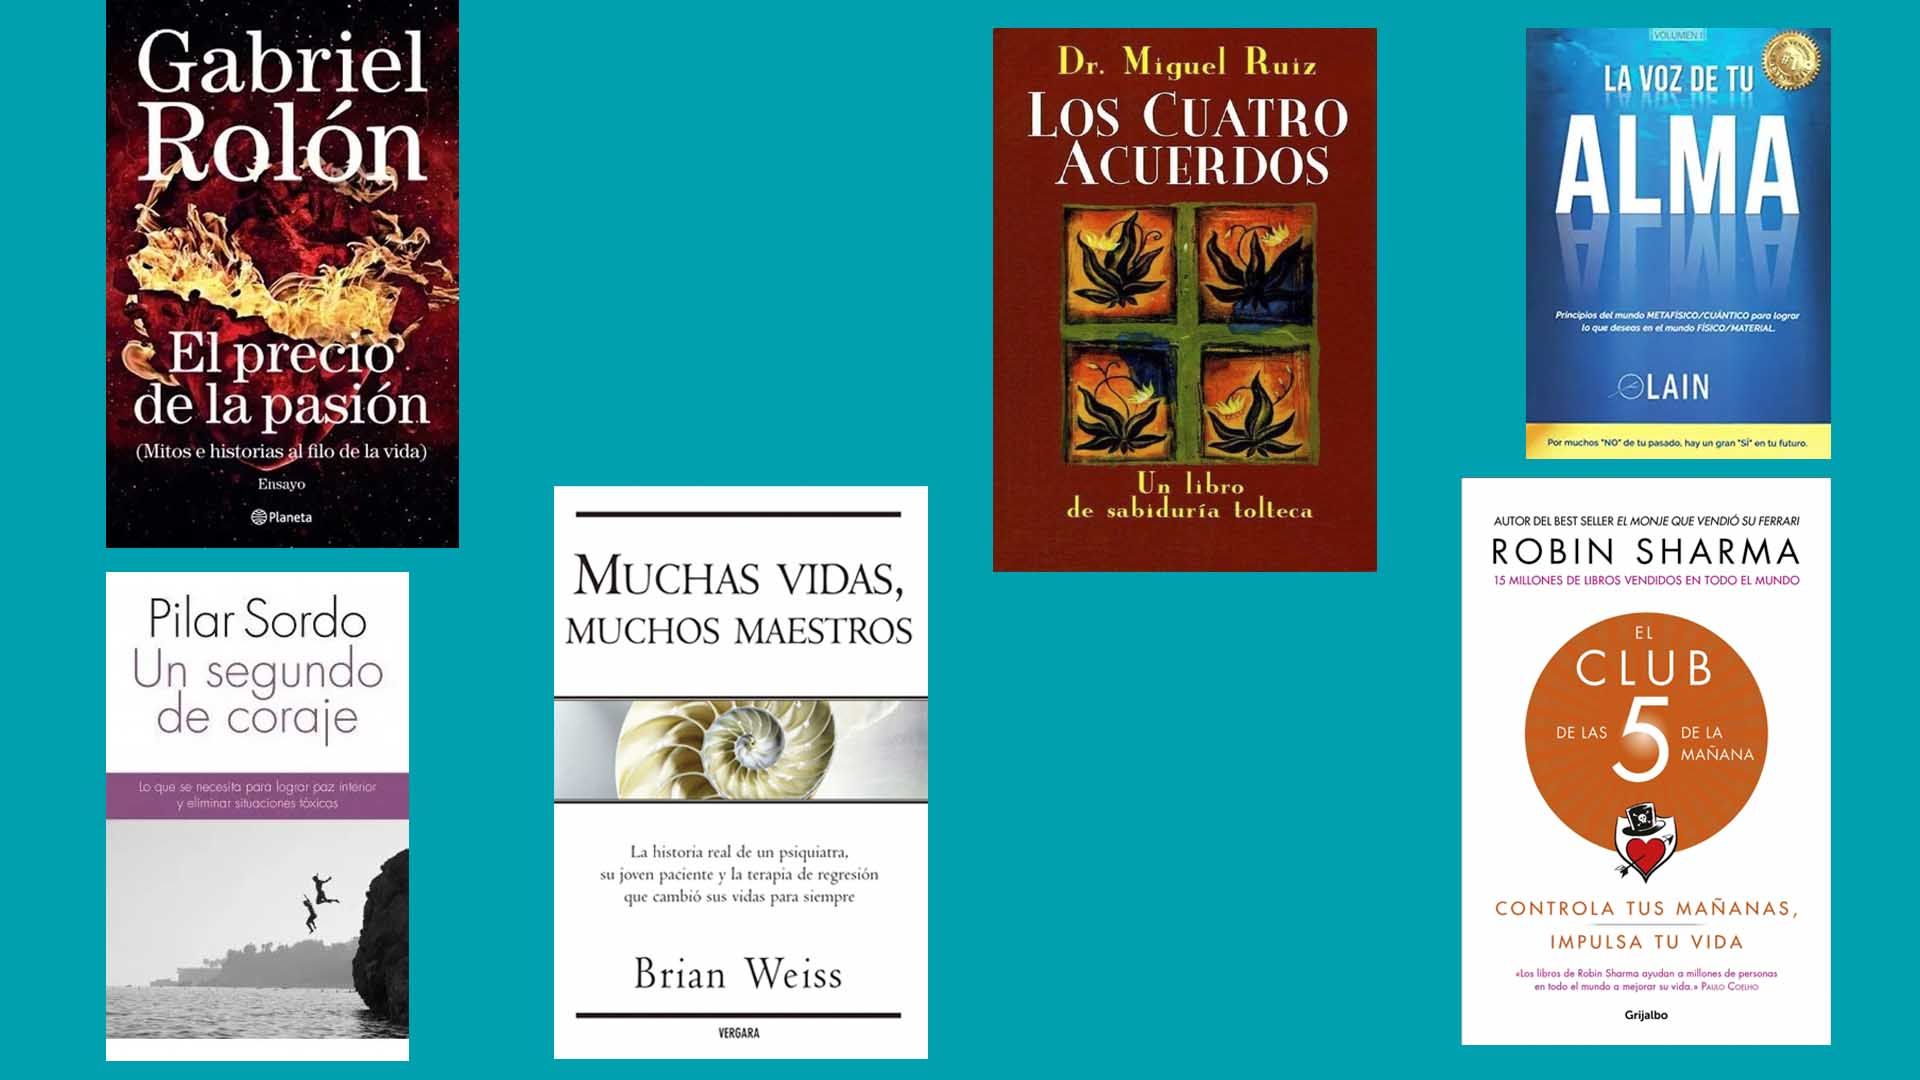 Noticias | Psicología y autoayuda: Los libros más vendidos en la cuarentena